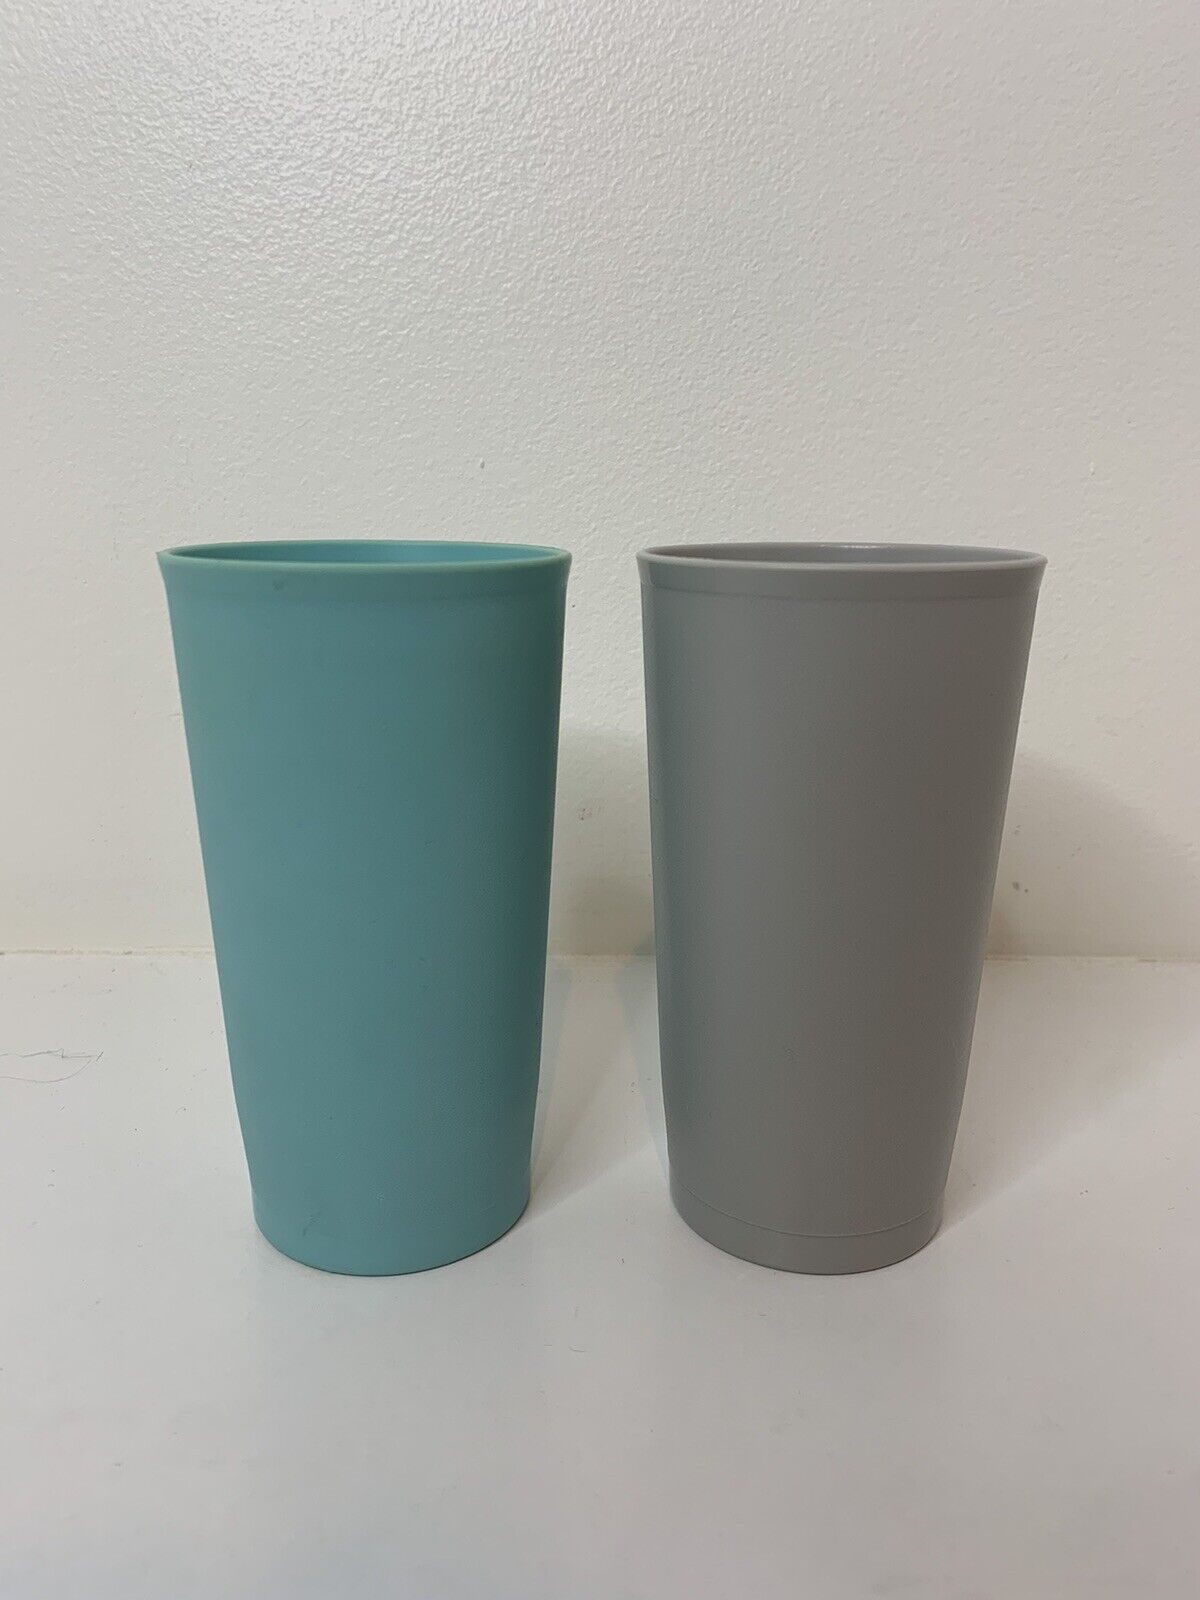 2 Vintage Tupperware Tumbler Cups Teal Aqua Blue, Grey 873-27 & 873-8 Big Cup